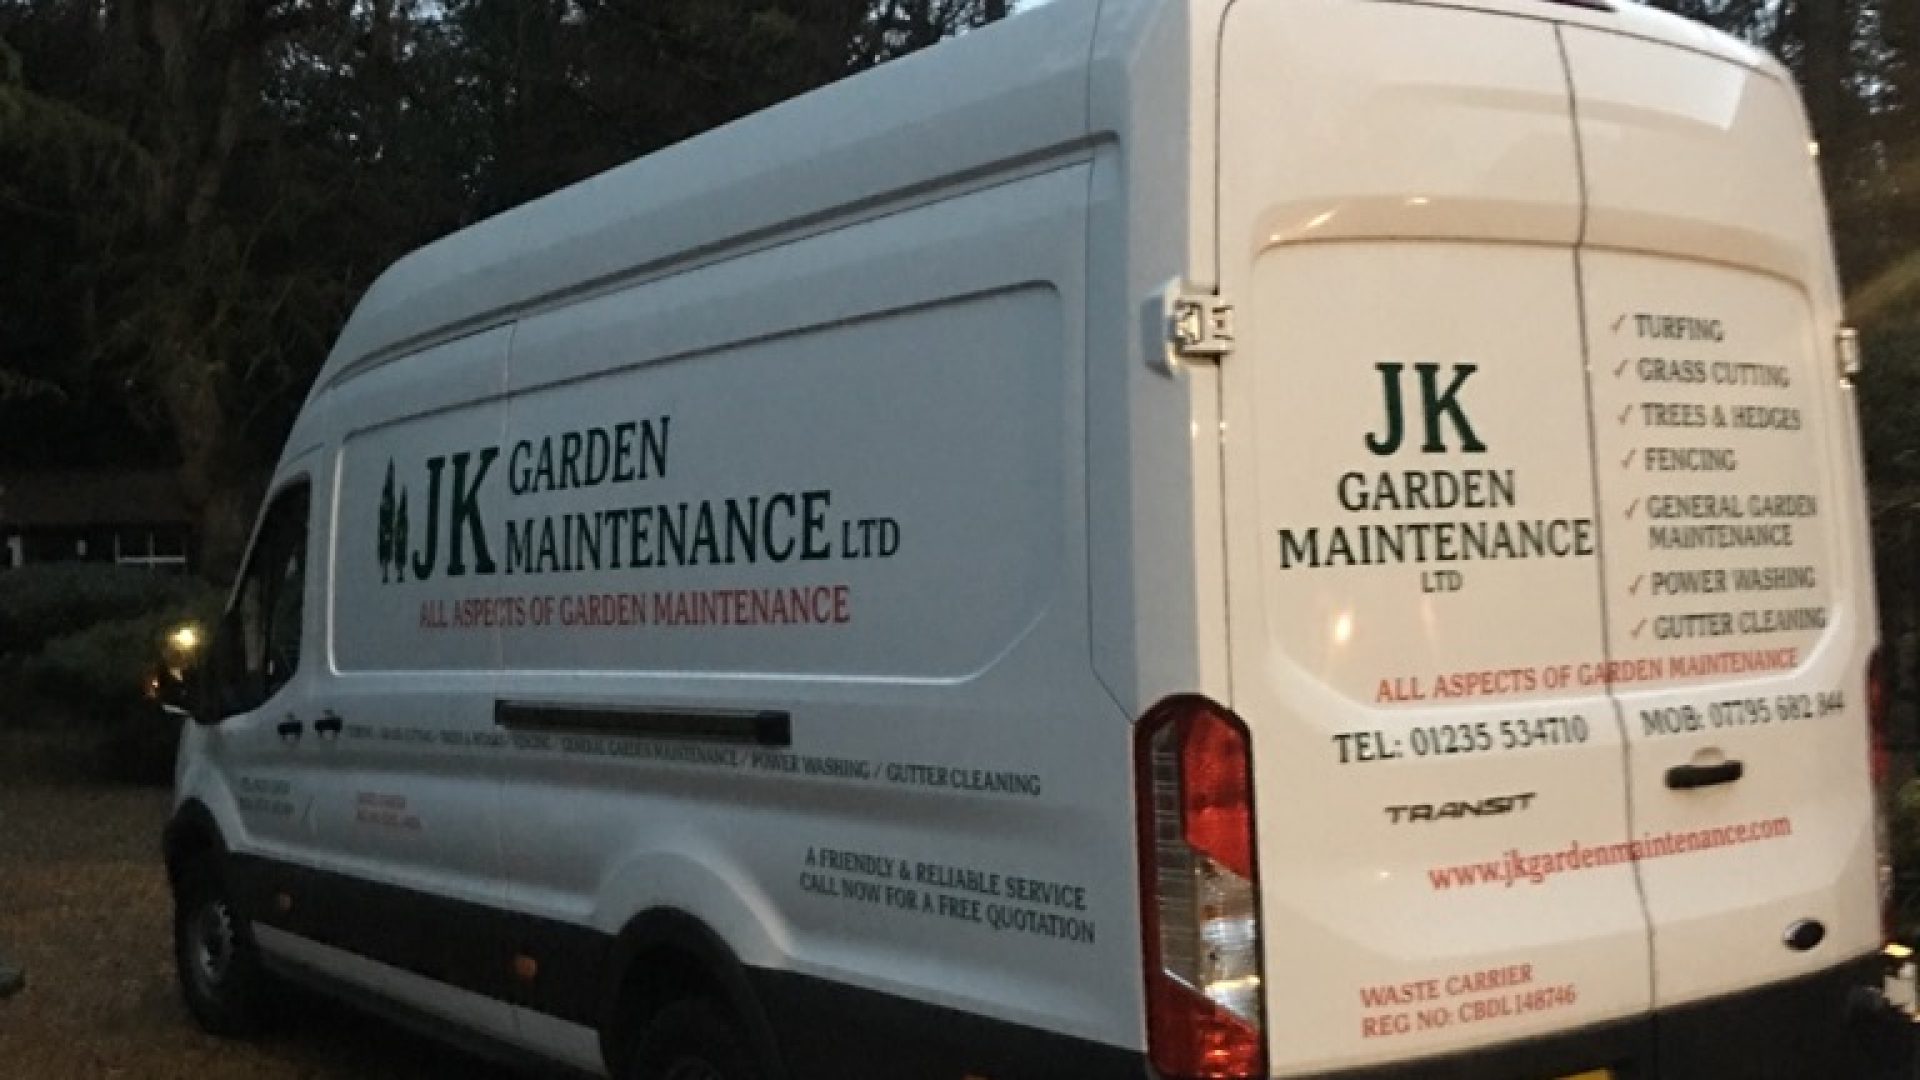 JK Garden Maintenance Ltd